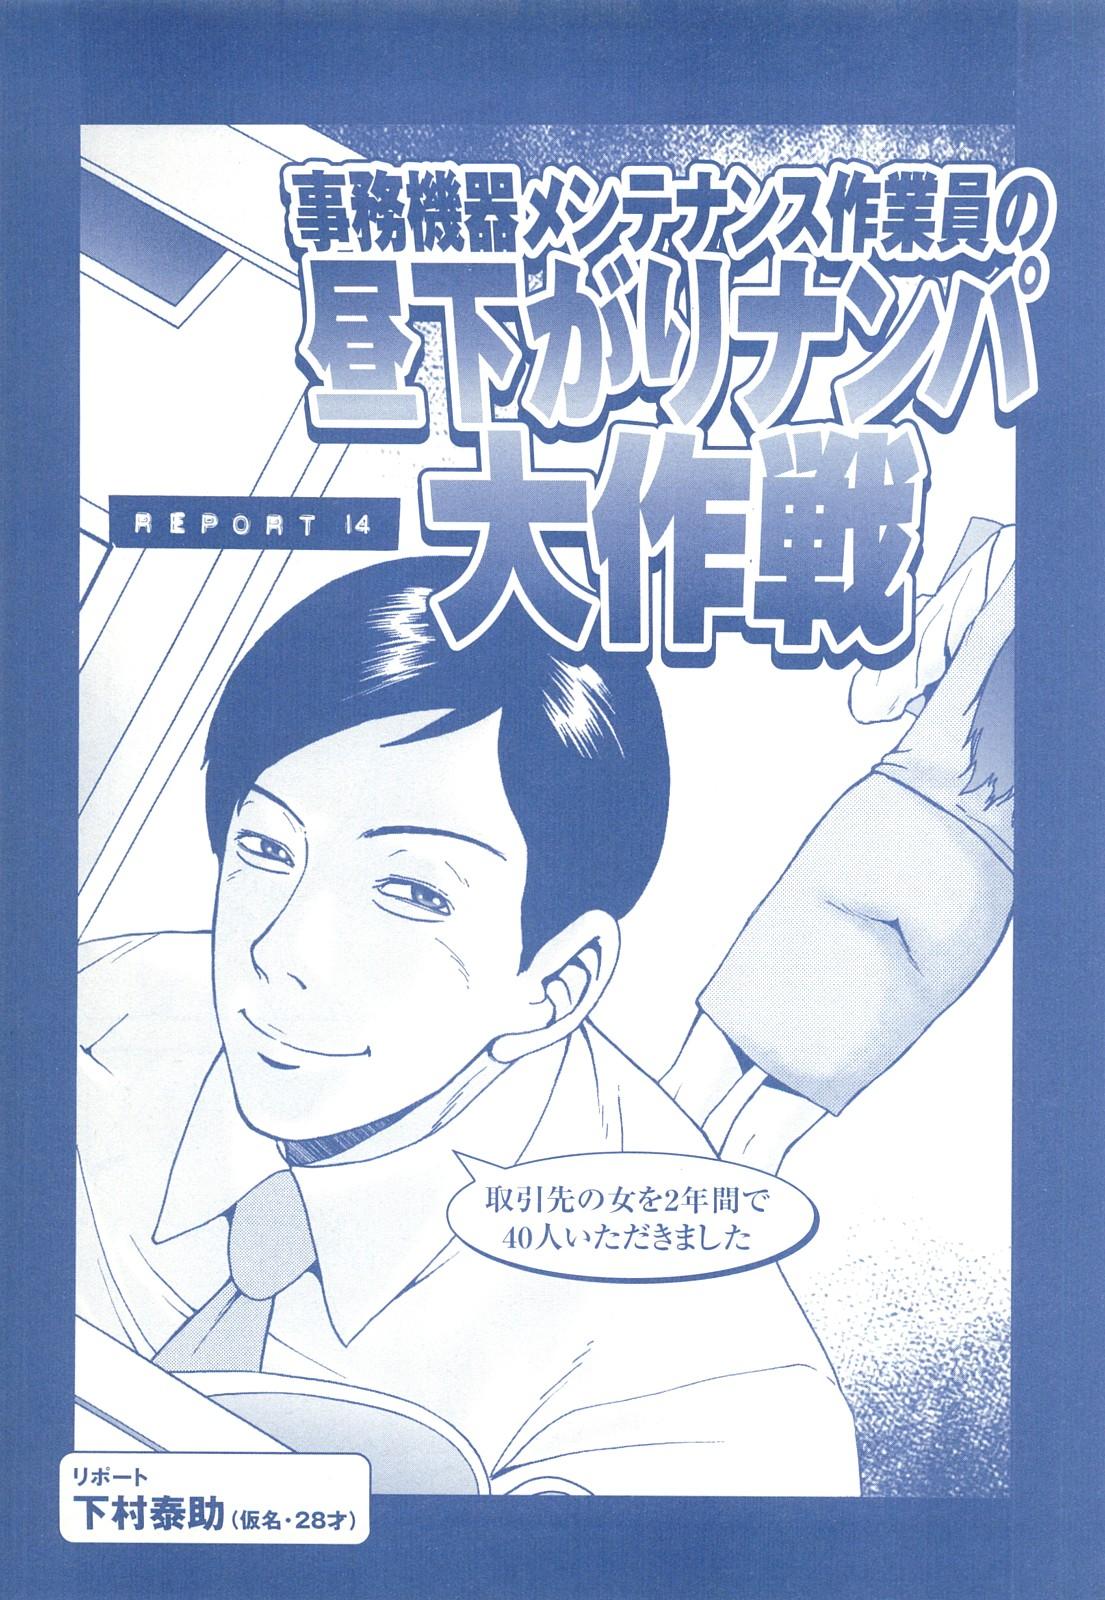 コミック裏モノJAPAN Vol.18 今井のりたつスペシャル号 226